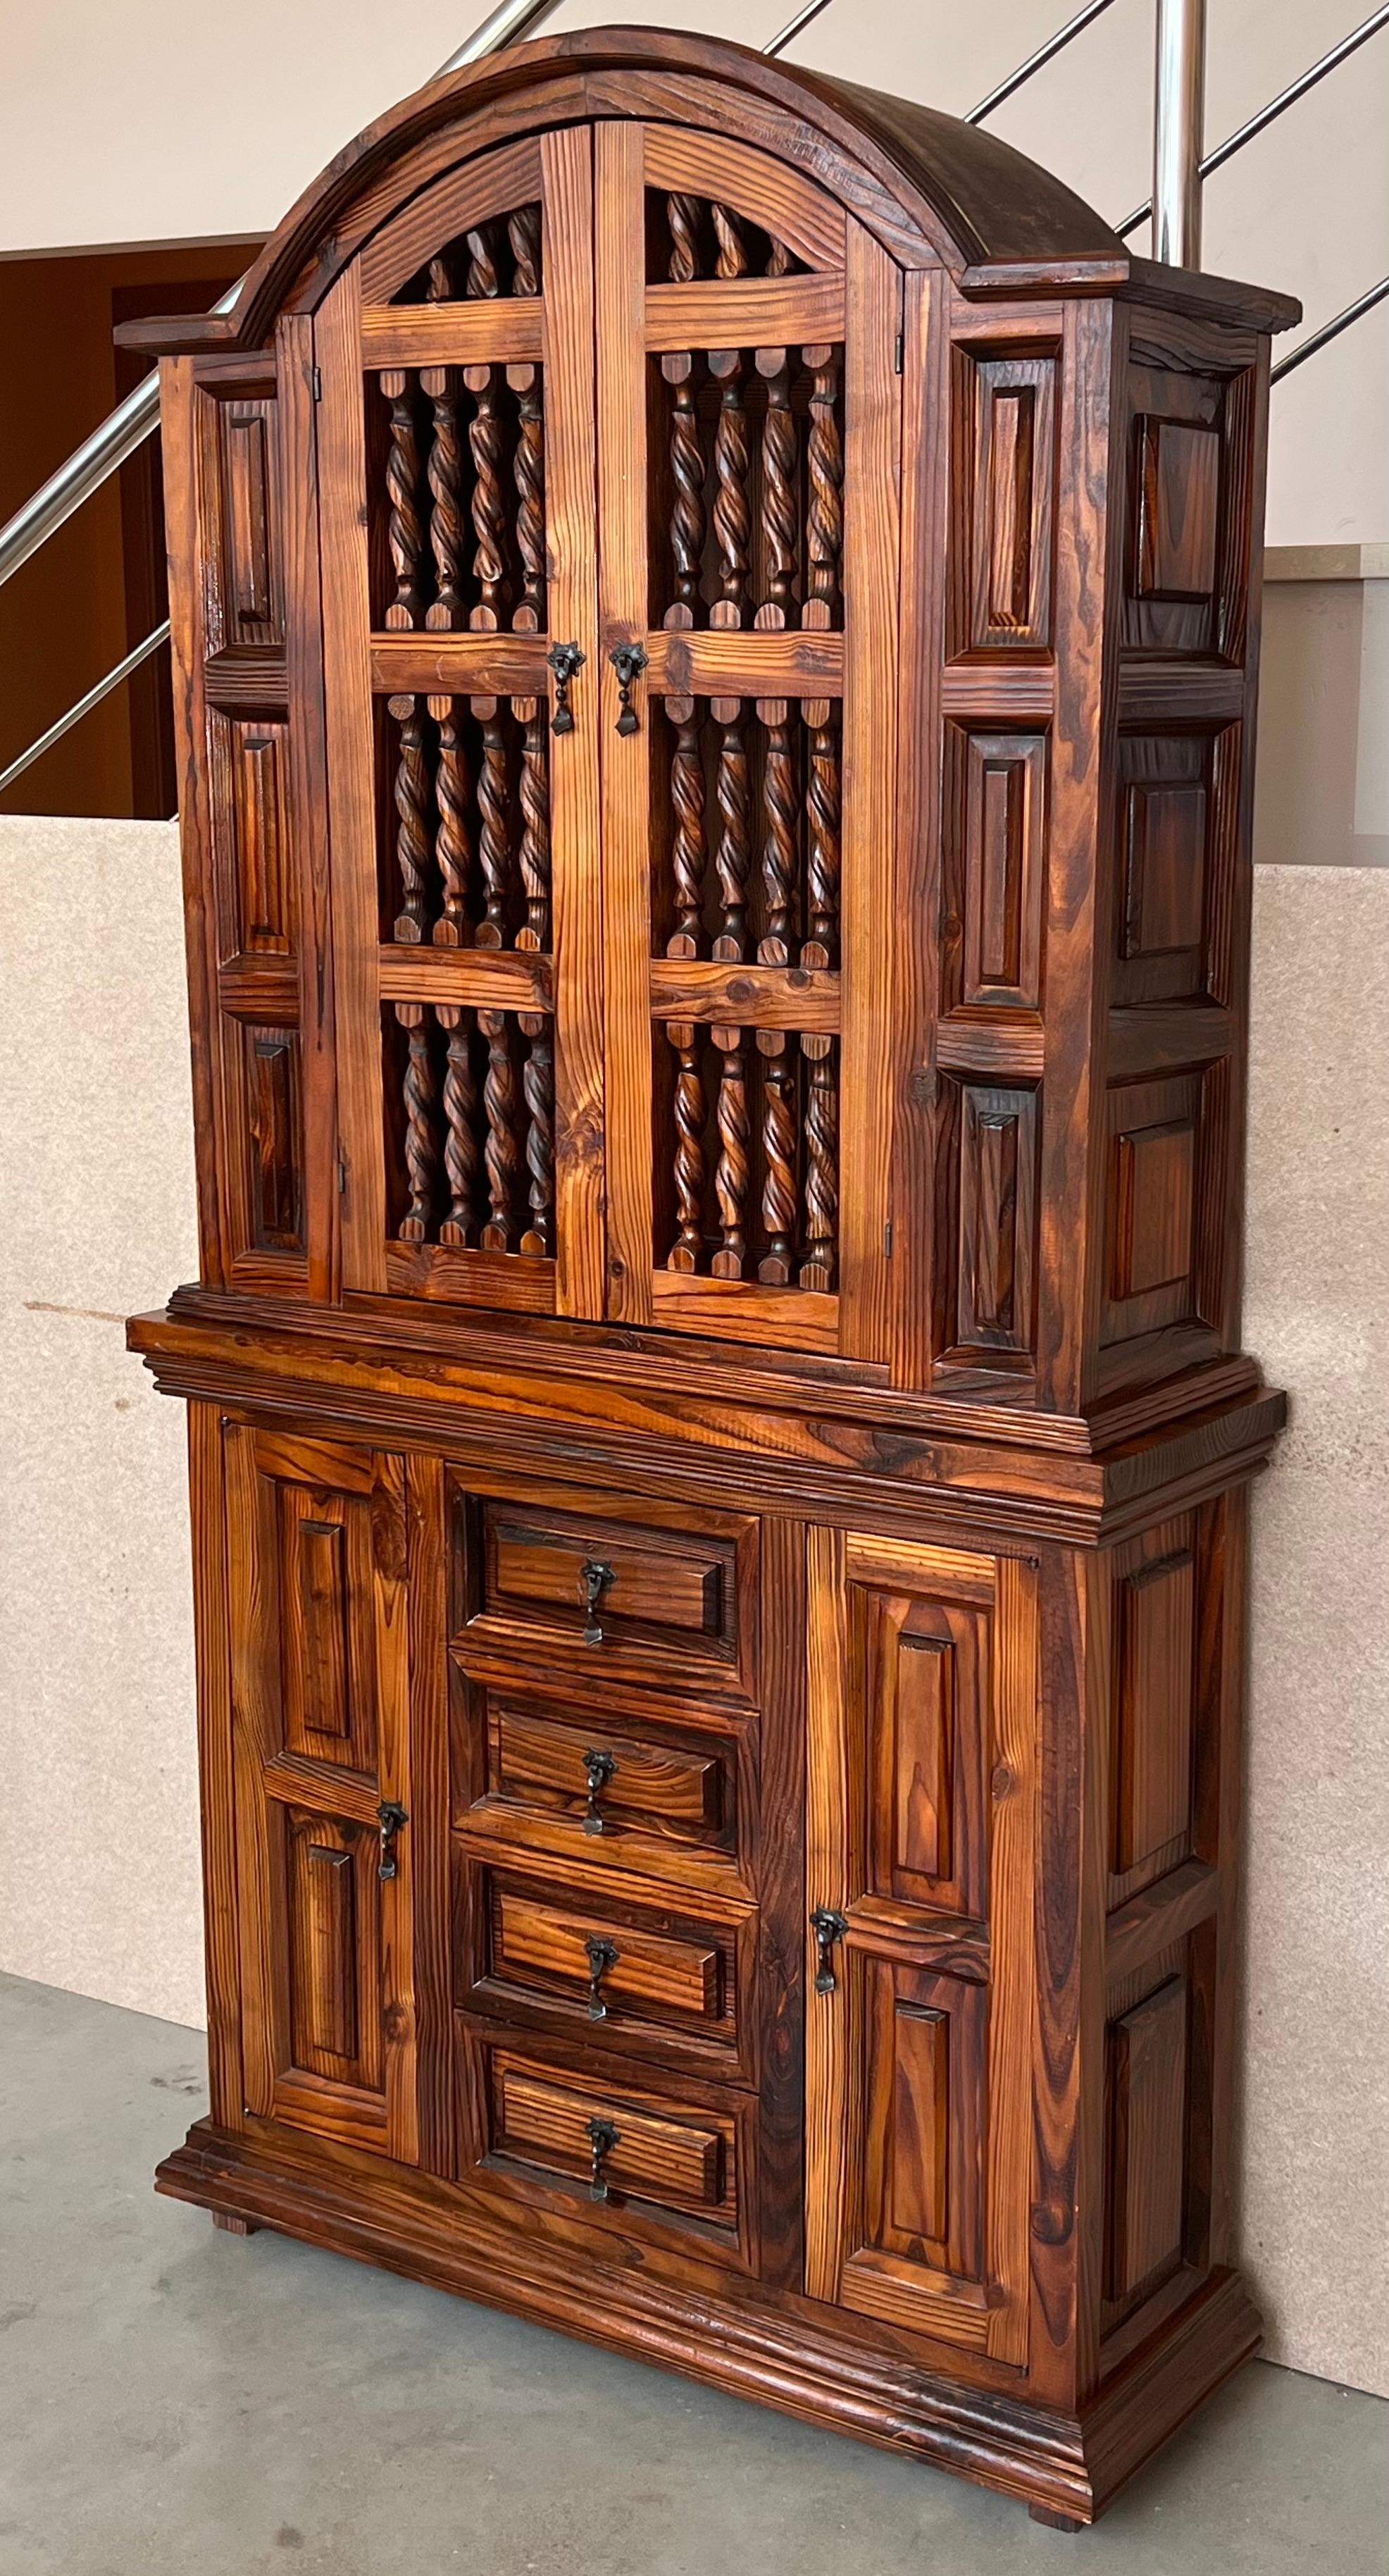 Grande armoire espagnole du 20ème siècle construite en pin. Il s'agit d'un meuble à caissons avec deux portes dans la partie haute et quatre tiroirs et deux portes dans la partie basse. Ce meuble massif fabriqué en Espagne présente un magnifique